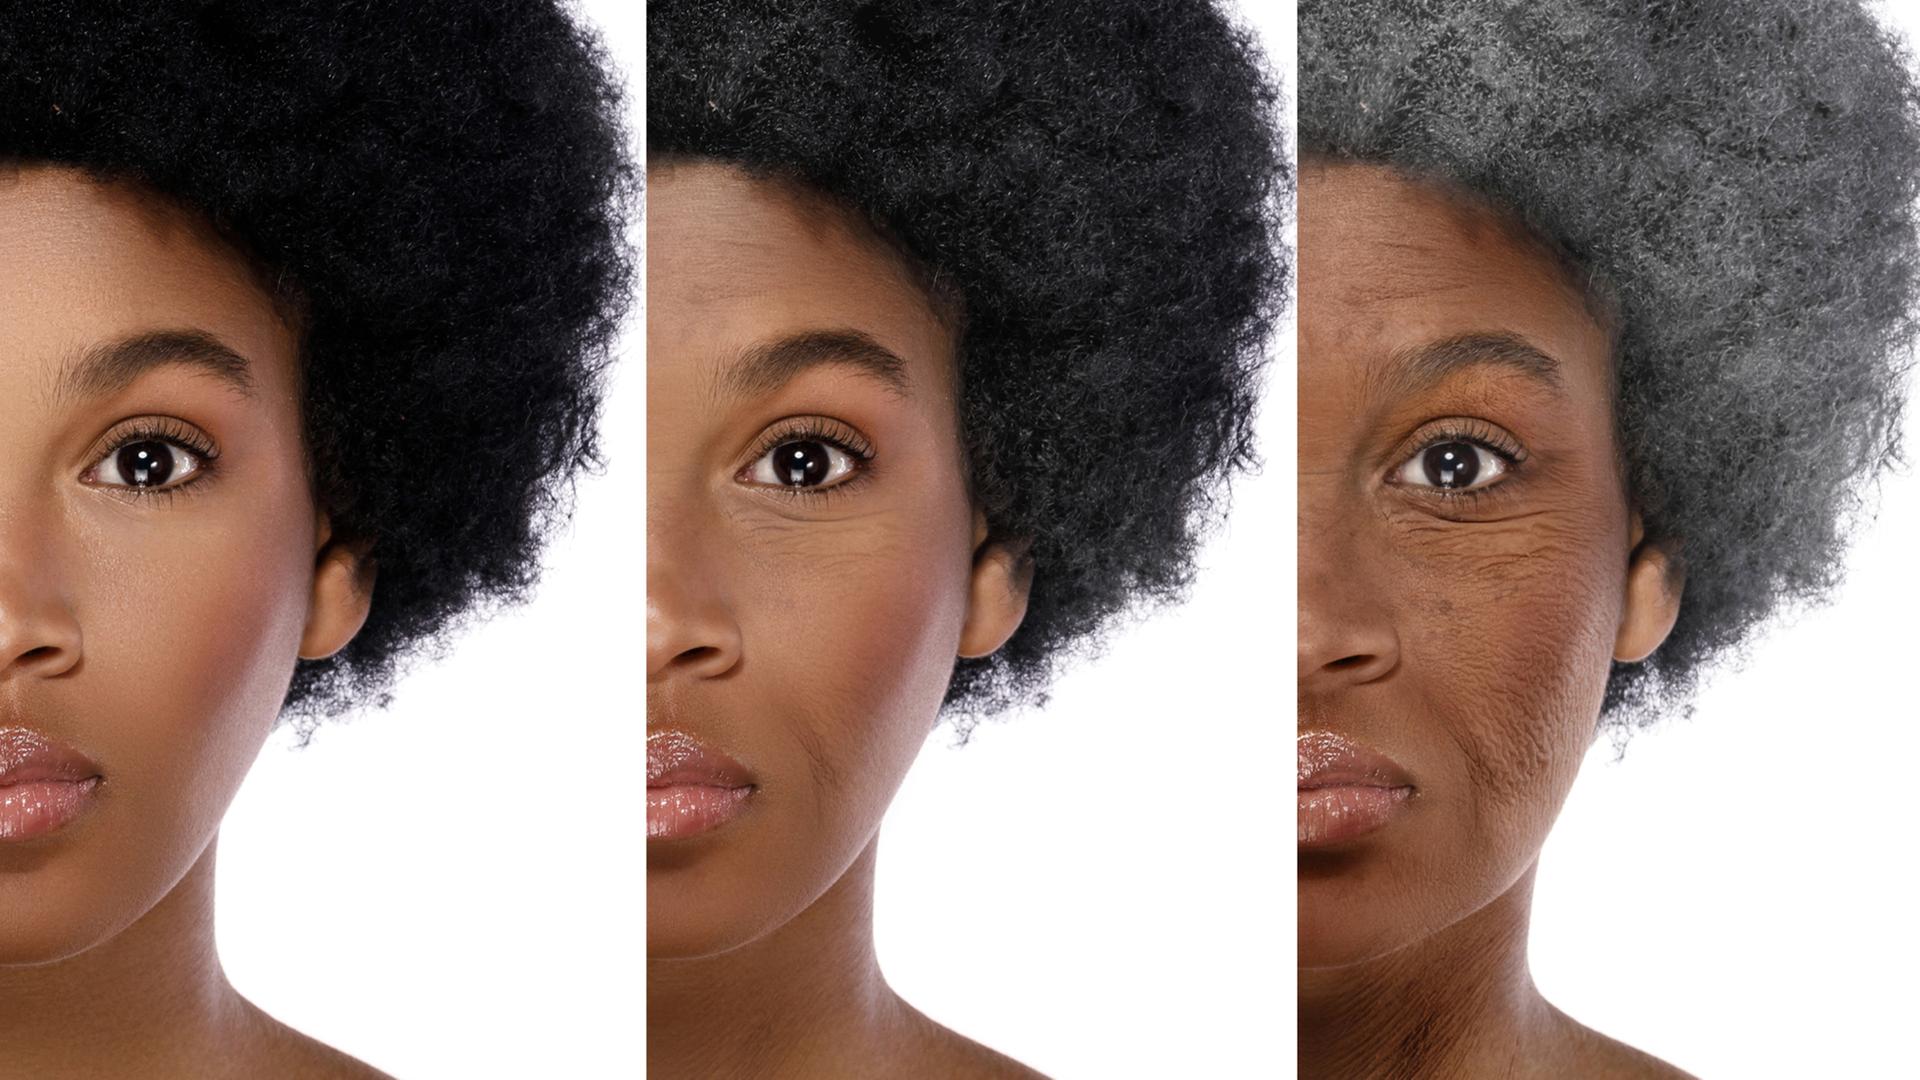 Portrait (Auschnitt) einer schwarzen Frau in drei unterschiedlichen Lebensaltern, von jung (links) nach älter (rechts) (Symbolbild)